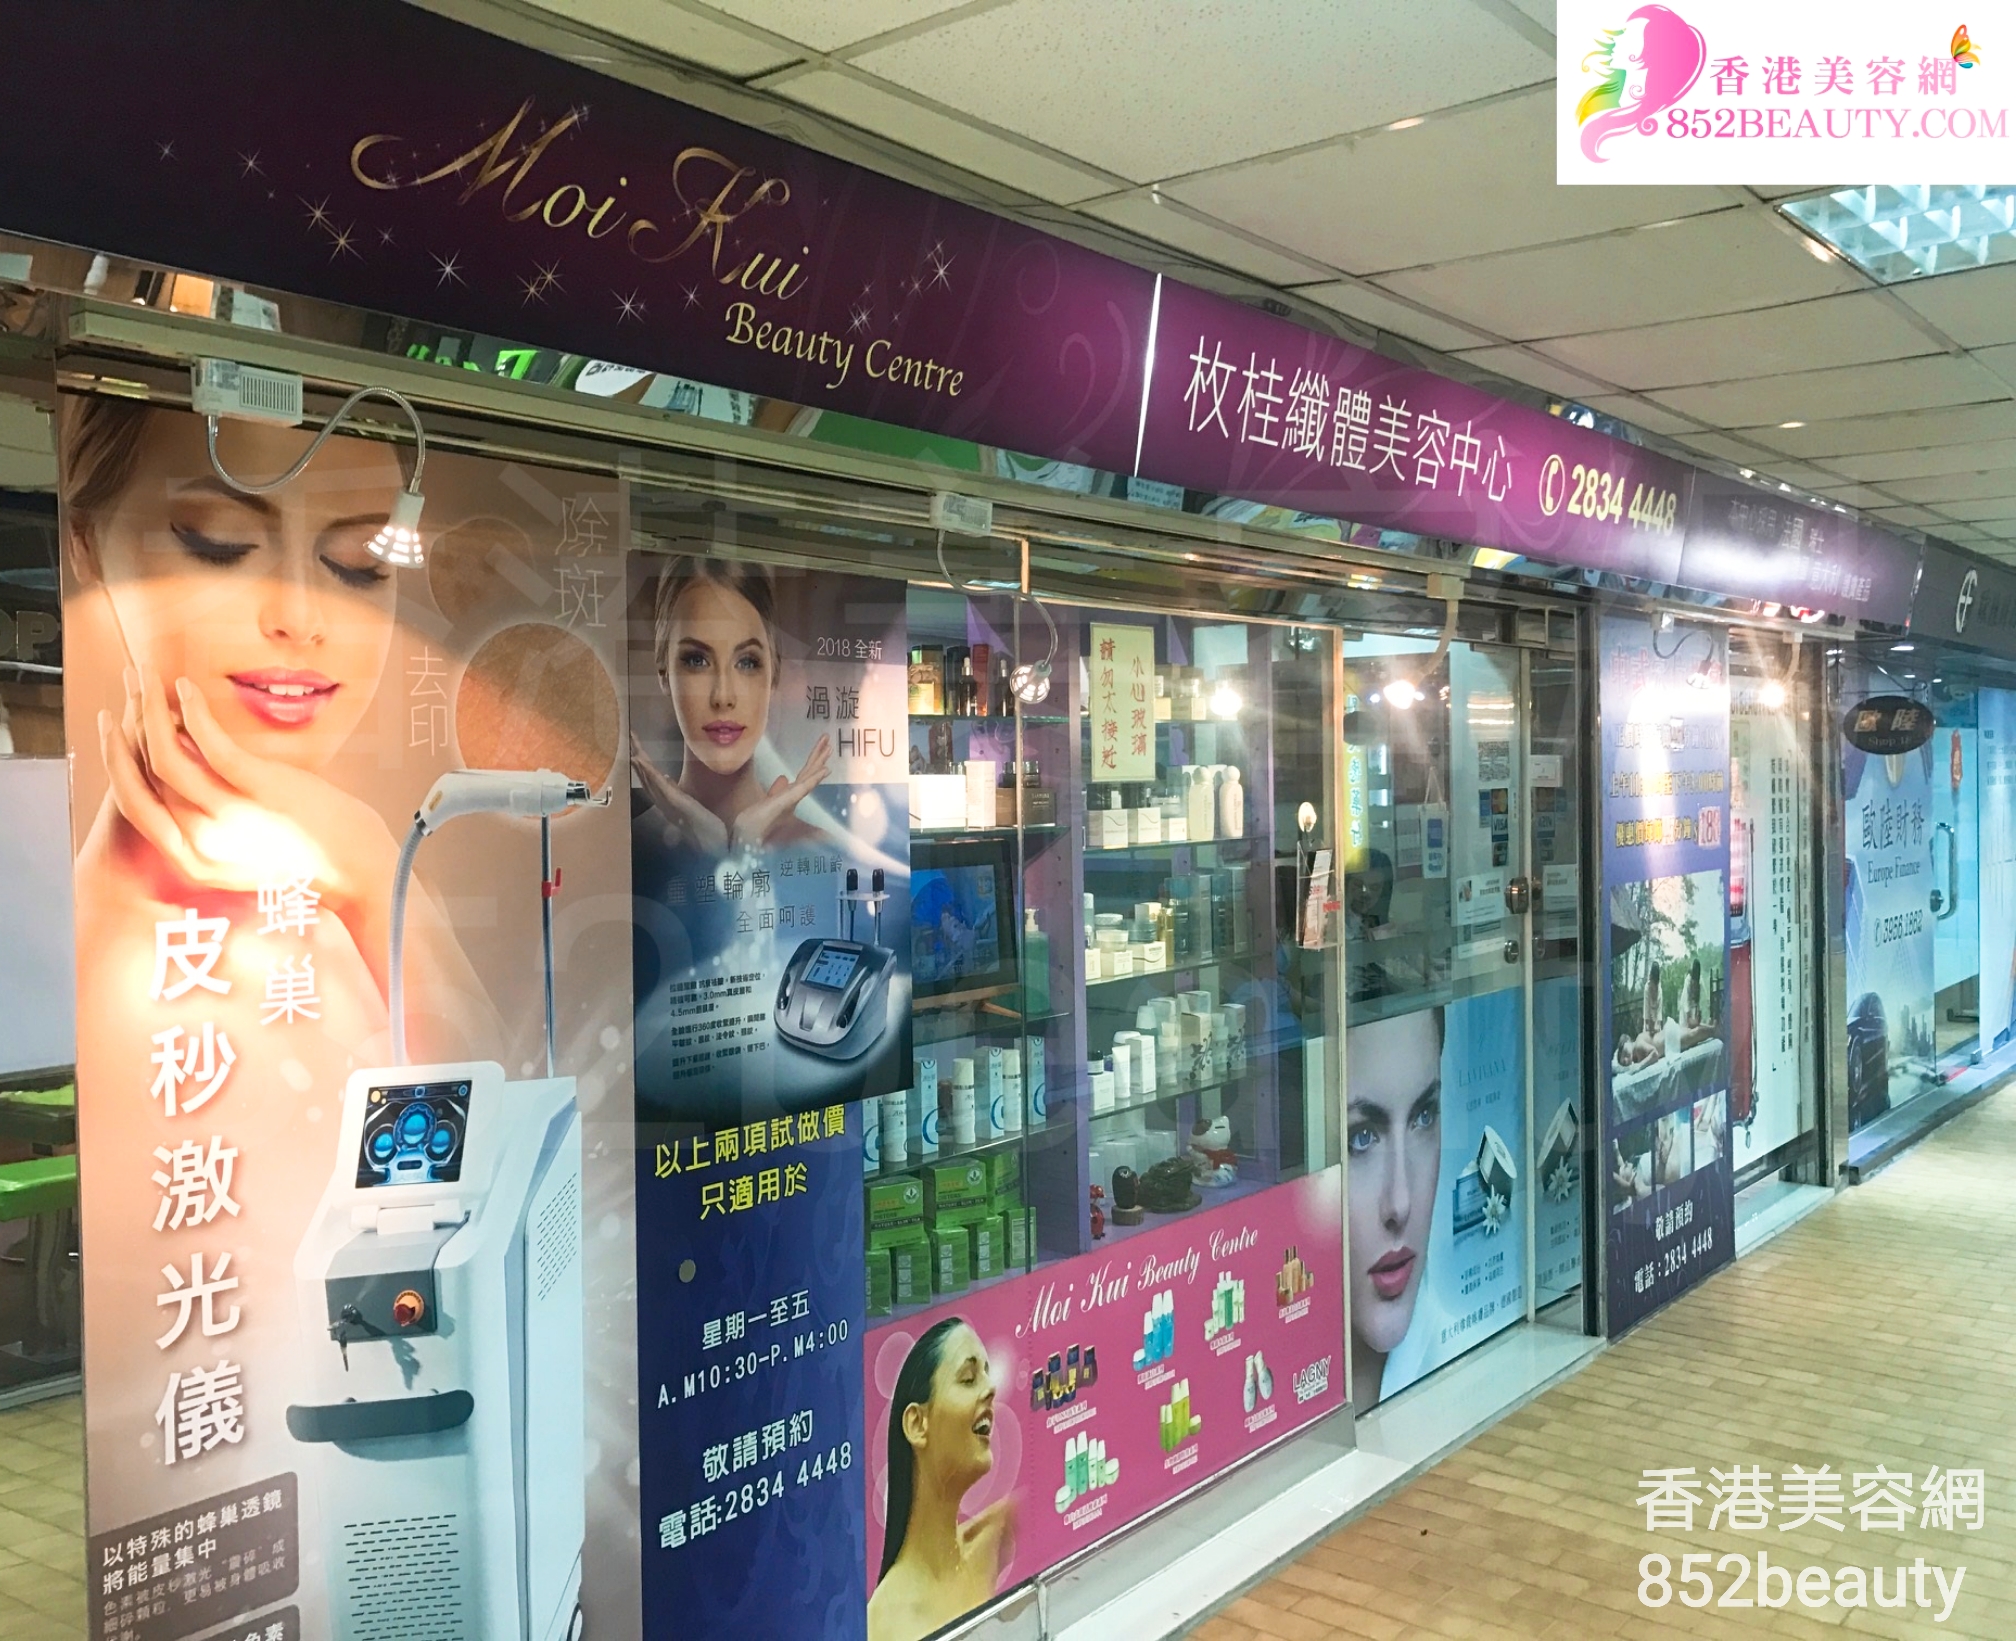 香港美容網 Hong Kong Beauty Salon 美容院 / 美容師: 枚桂纖體美容中心 Moi Kui Beauty Centre